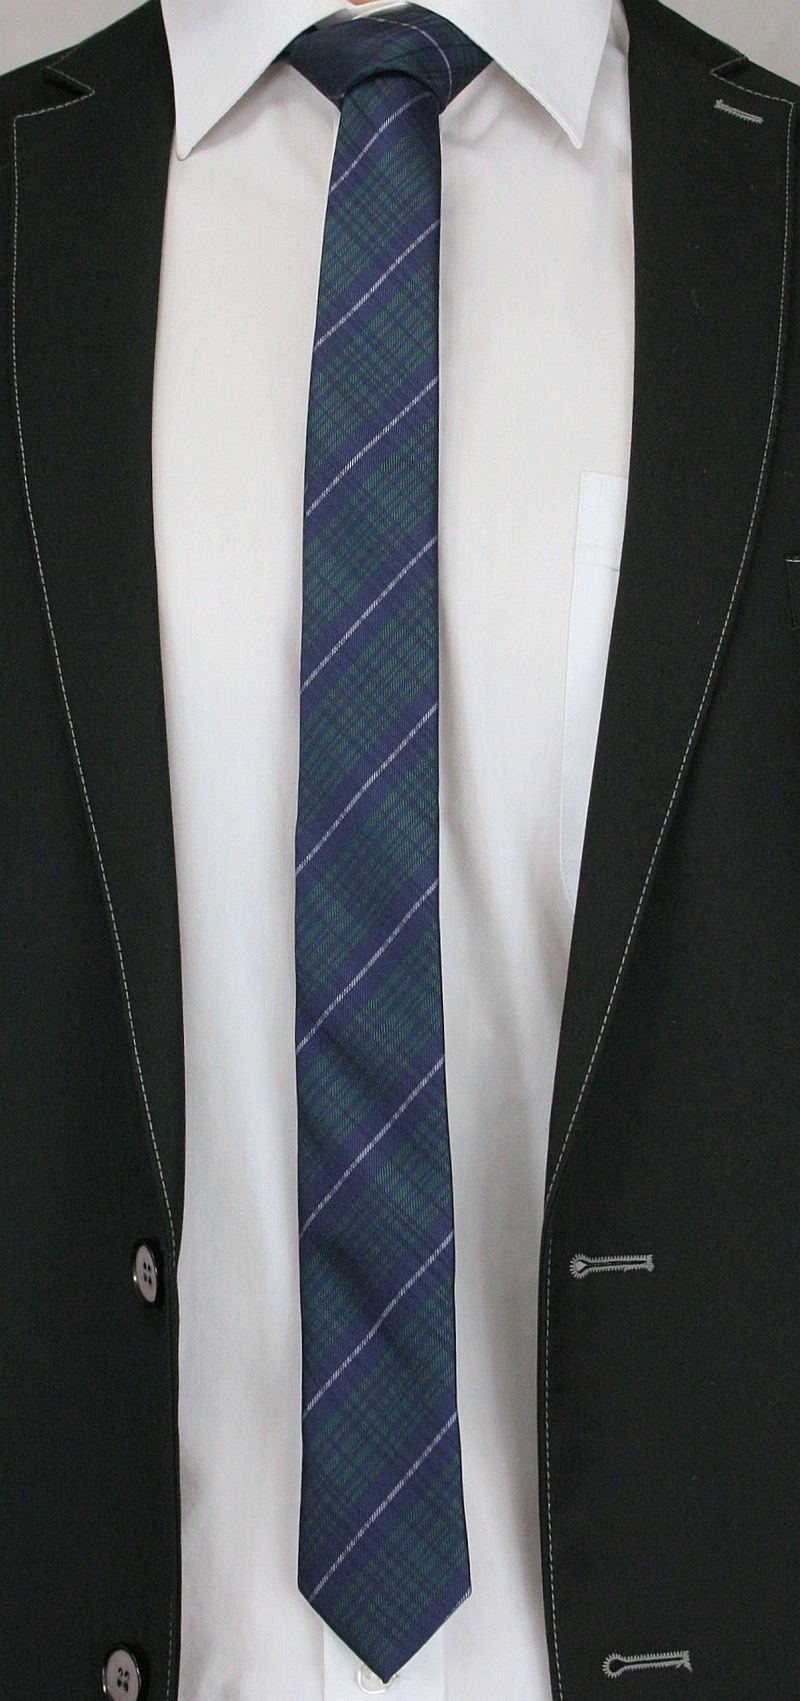 Granatowo-Zielony Stylowy Krawat (Śledź) Męski -ALTIES- 5 cm, Wąski, w Kratkę